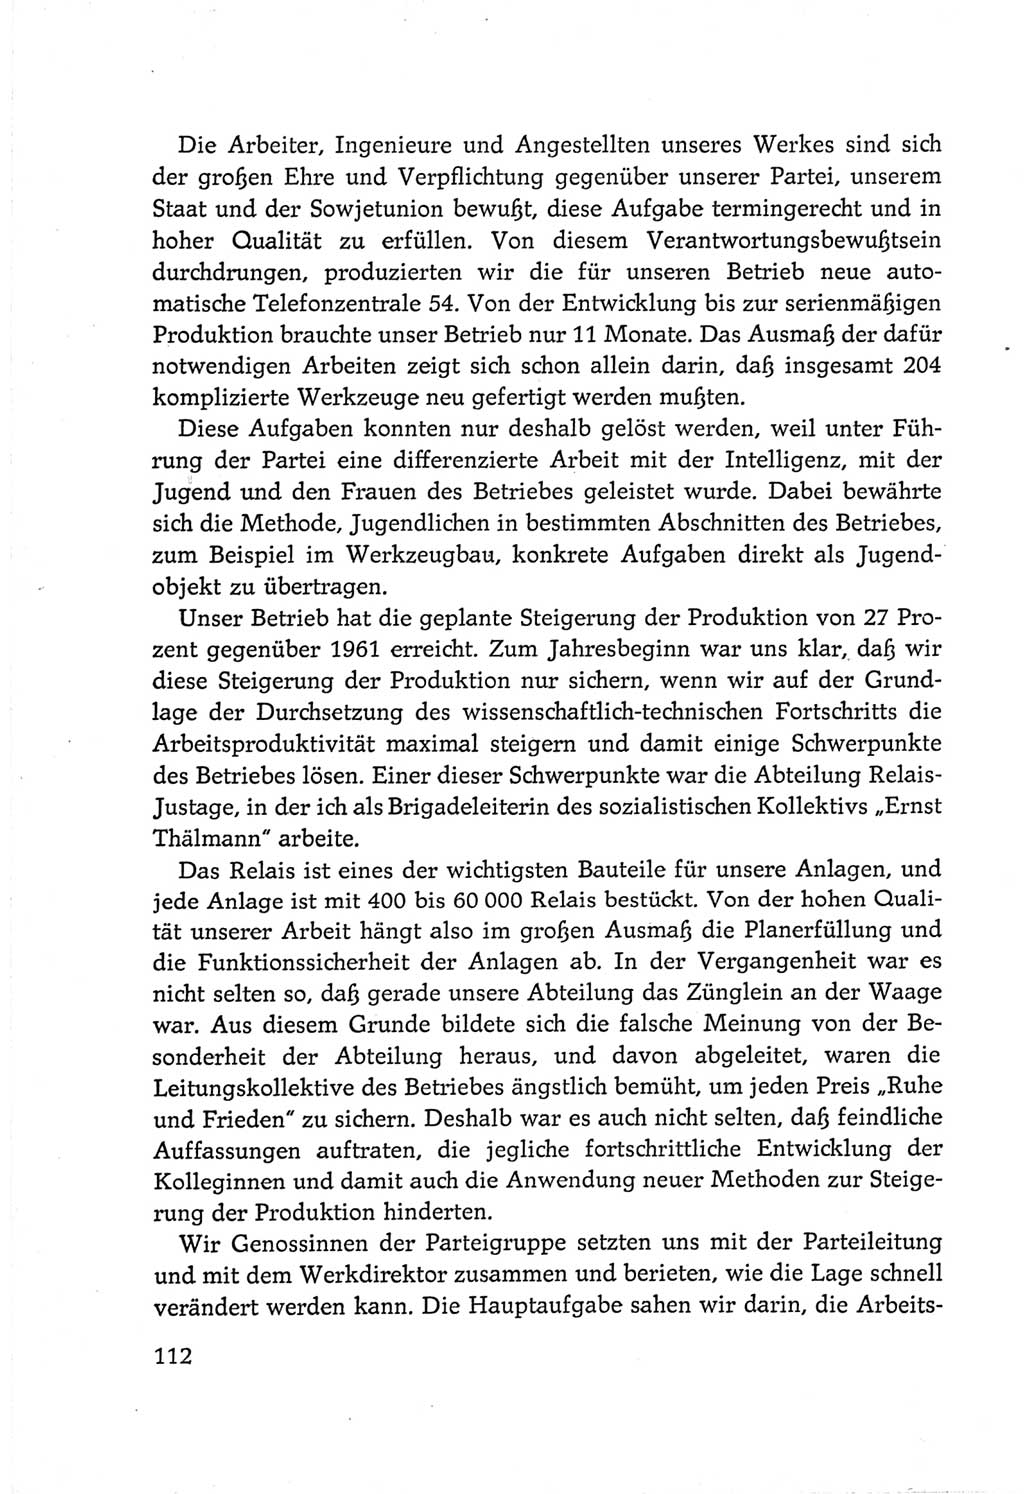 Protokoll der Verhandlungen des Ⅵ. Parteitages der Sozialistischen Einheitspartei Deutschlands (SED) [Deutsche Demokratische Republik (DDR)] 1963, Band Ⅲ, Seite 112 (Prot. Verh. Ⅵ. PT SED DDR 1963, Bd. Ⅲ, S. 112)